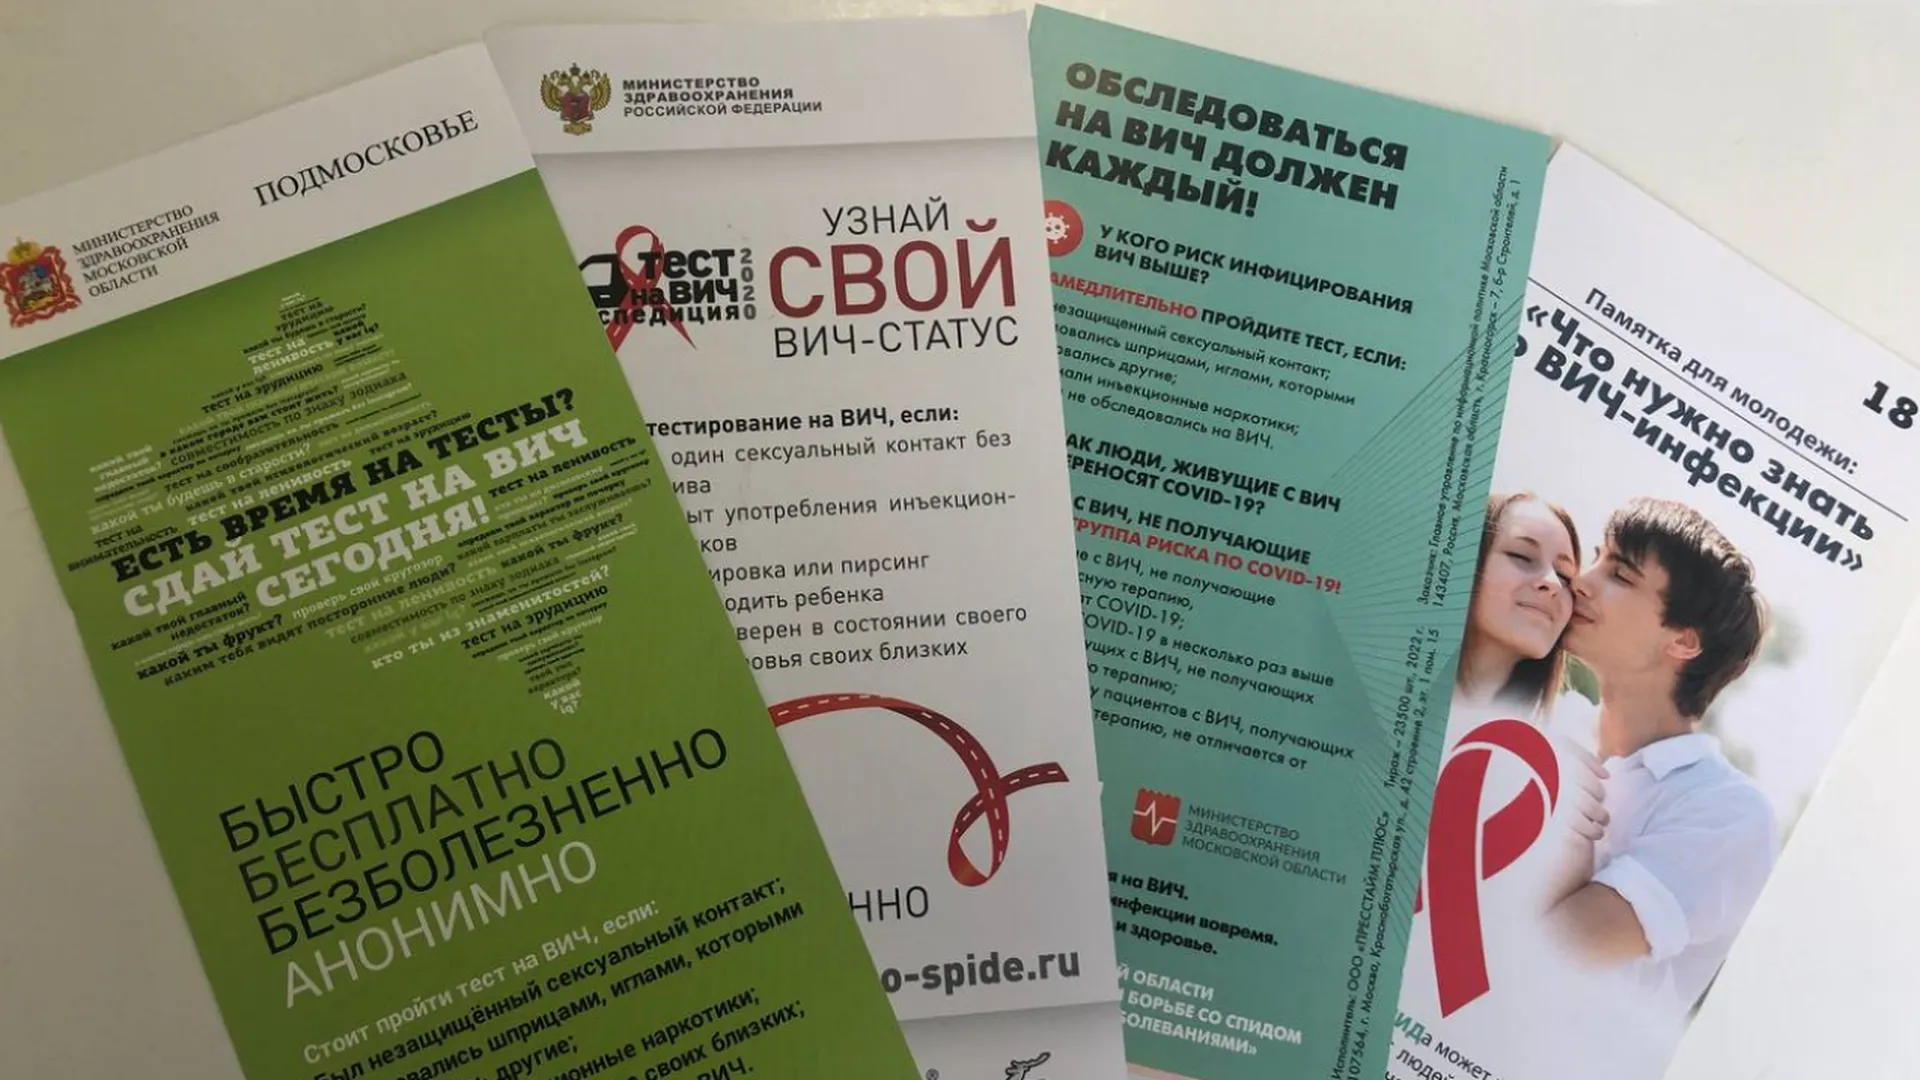 Центр по профилактике и борьбе со СПИДом и инфекционными заболеваниями Московской области